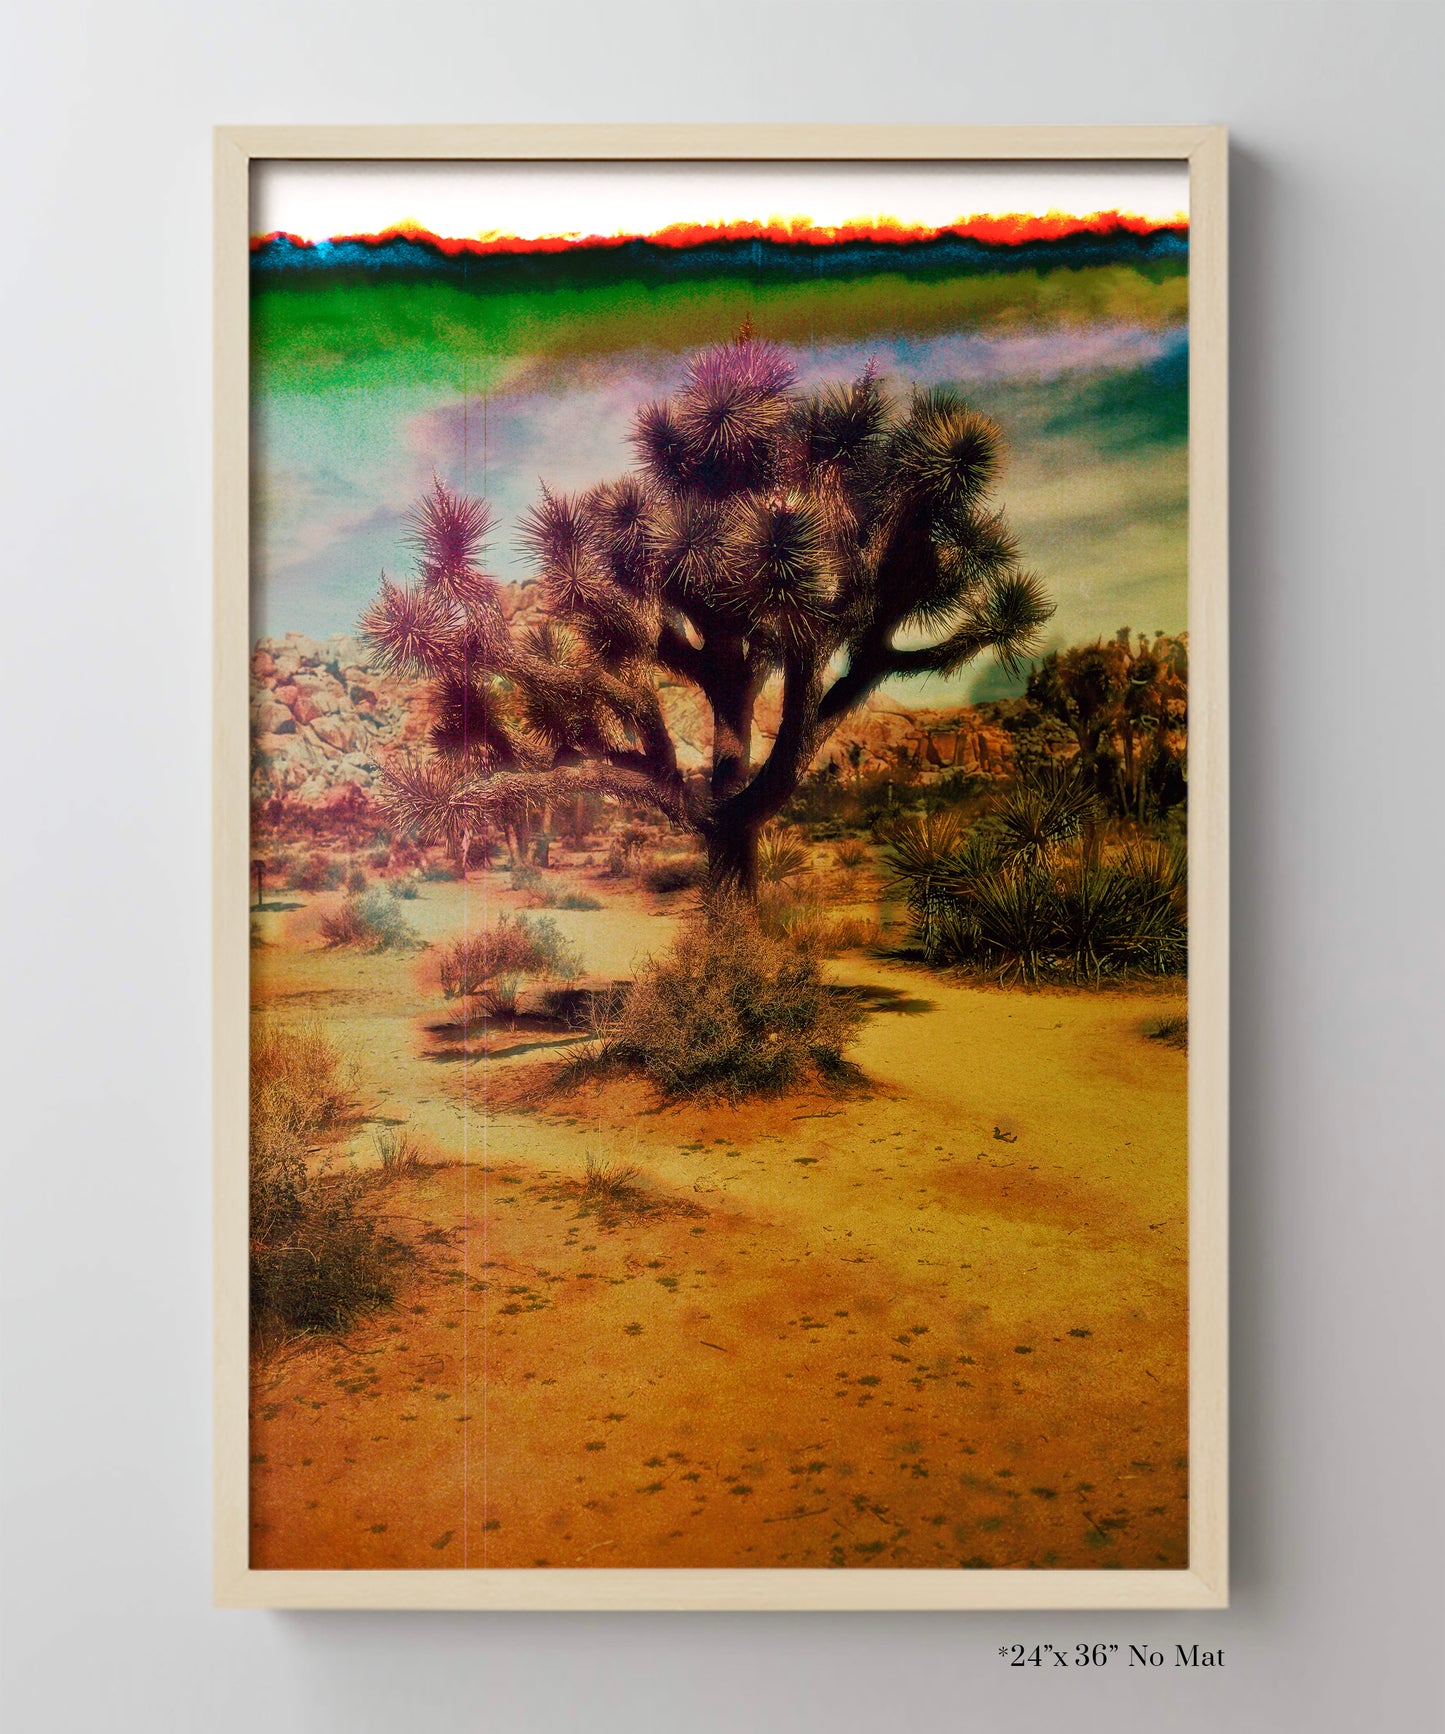 Joshua Tree Landscape #6 by Zachary C. Bako